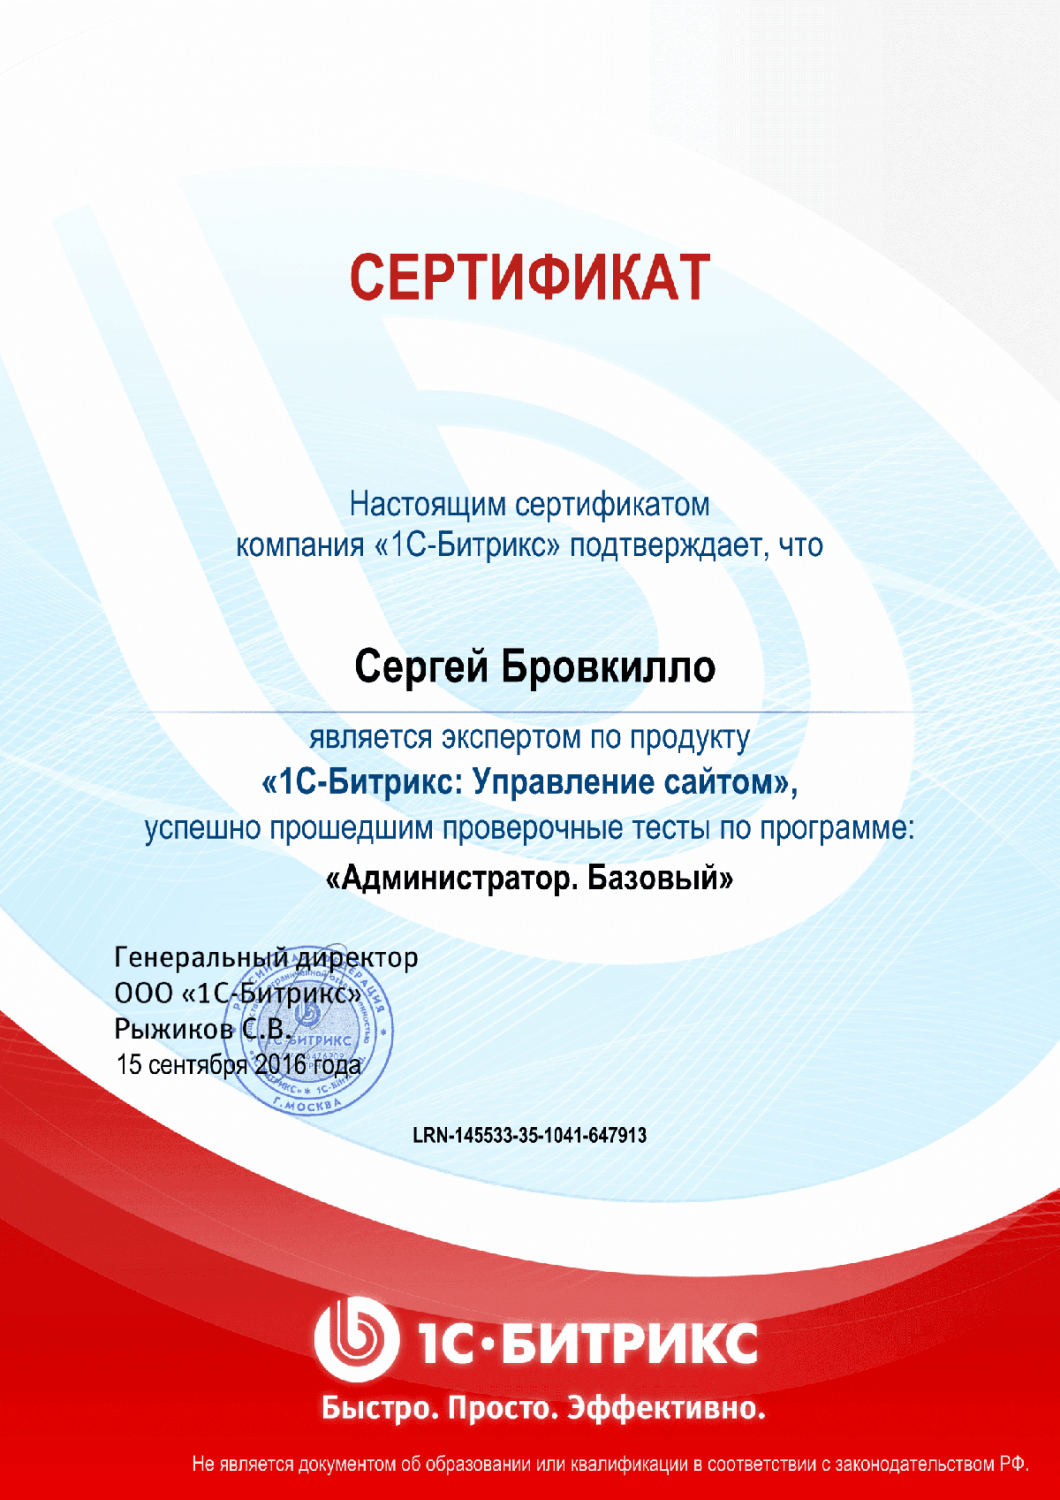 Сертификат эксперта по программе "Администратор. Базовый" в Самары